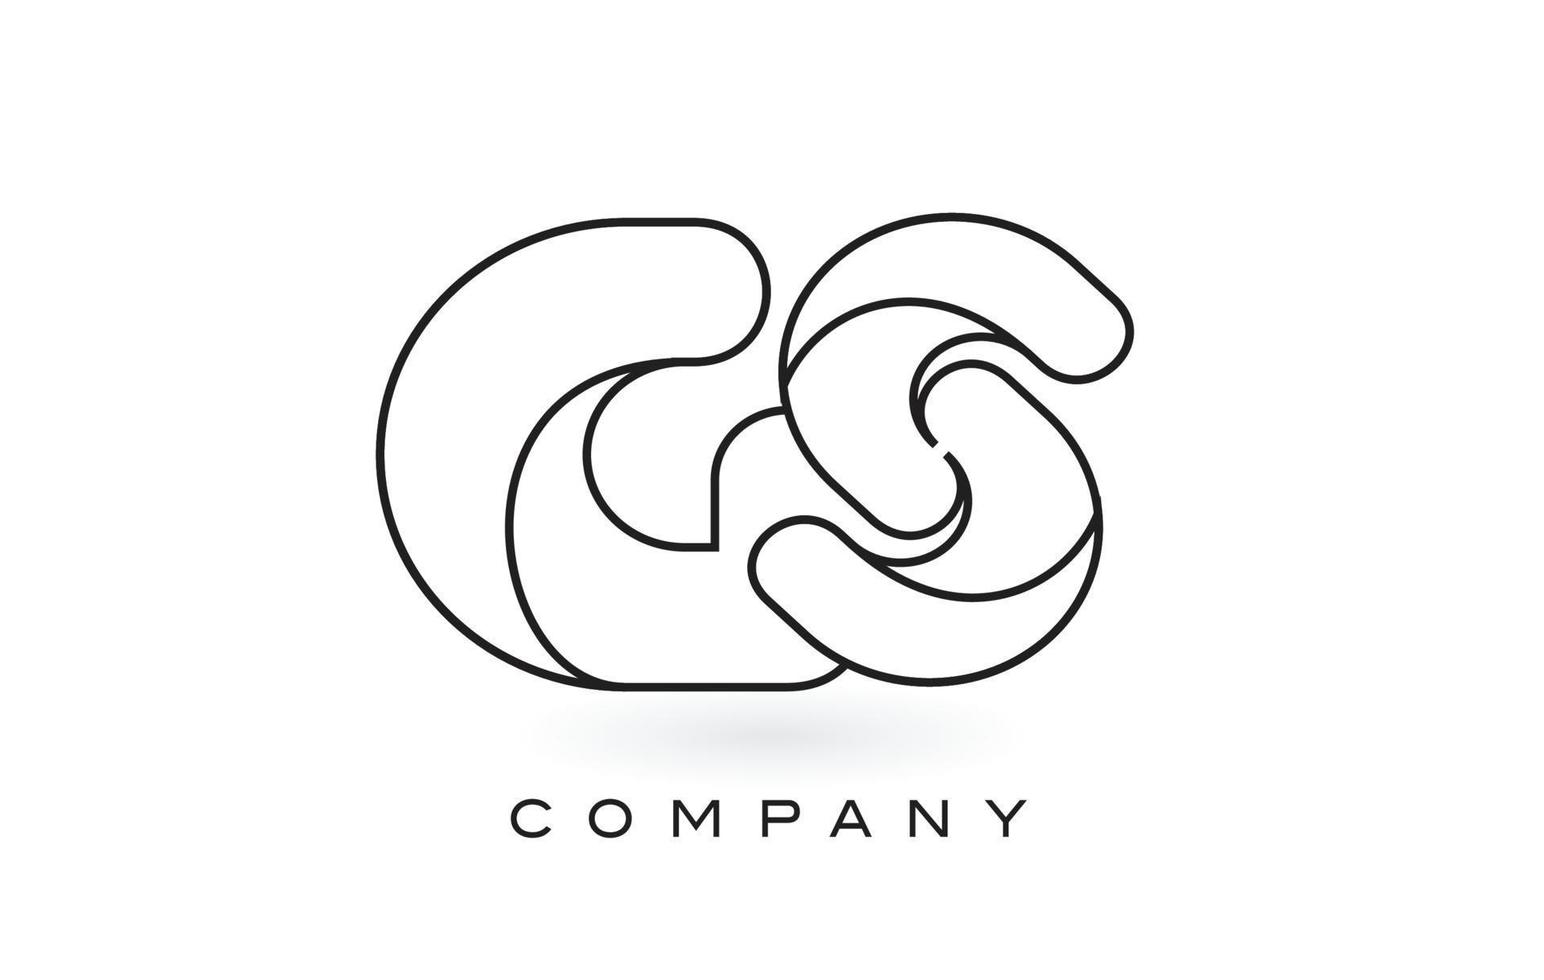 Logotipo de letra gs monogram con contorno de contorno de monograma negro fino. vector de diseño de carta de moda moderna.